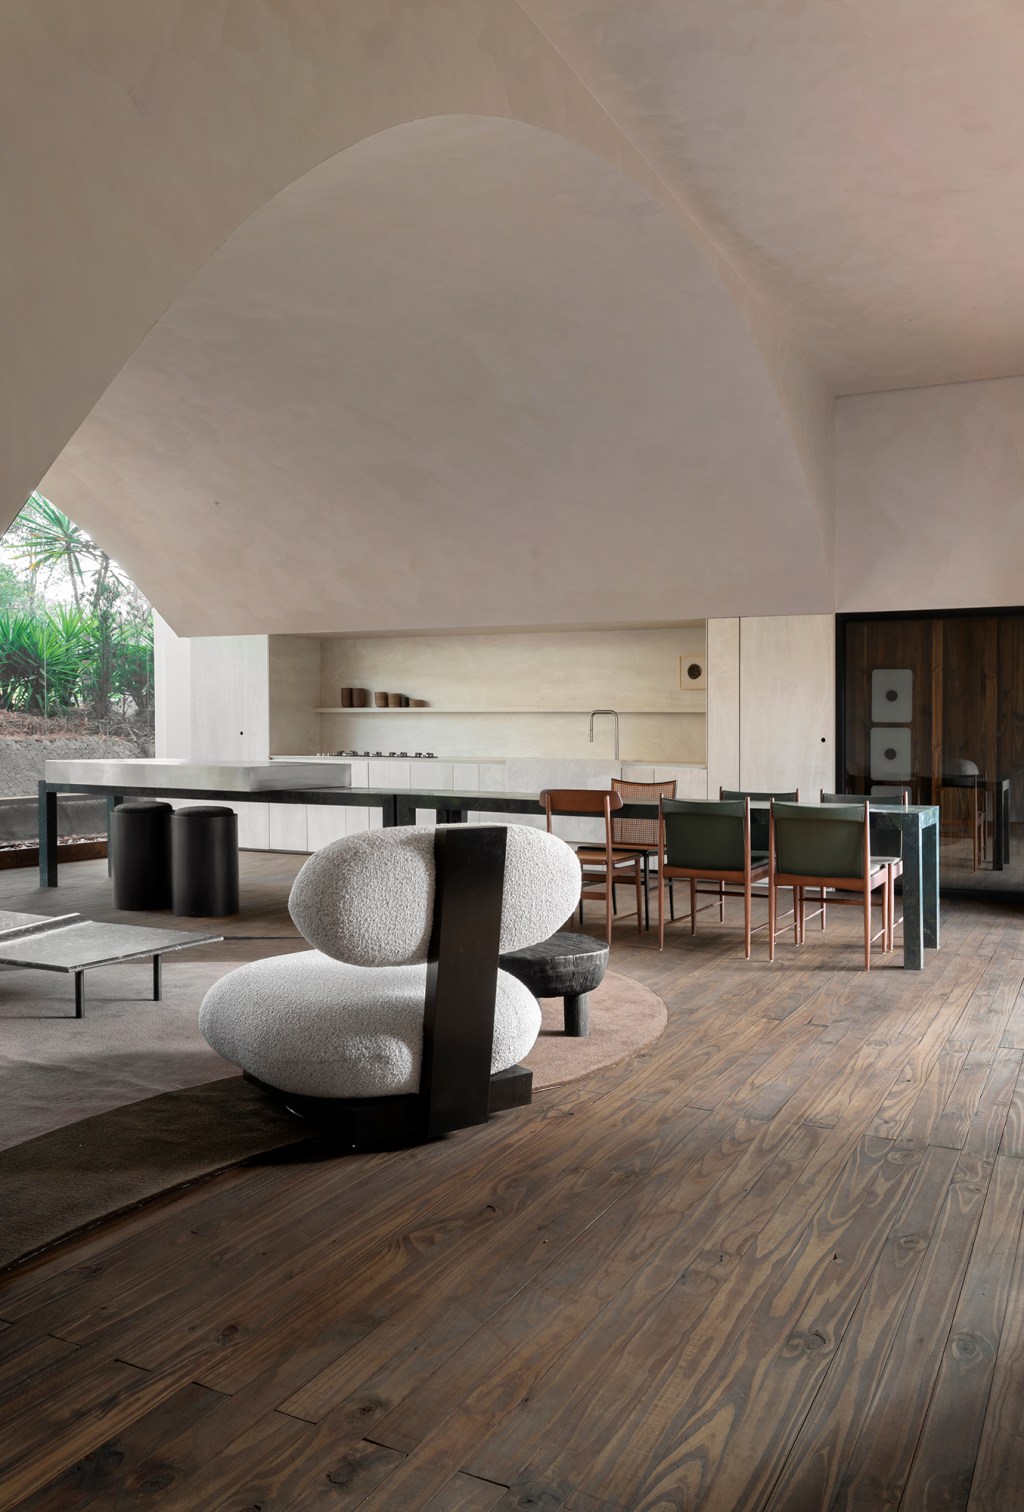 Estudio Sala Sala da Casa CASACOR Minas Gerais 2022 sofa mesa poltrona